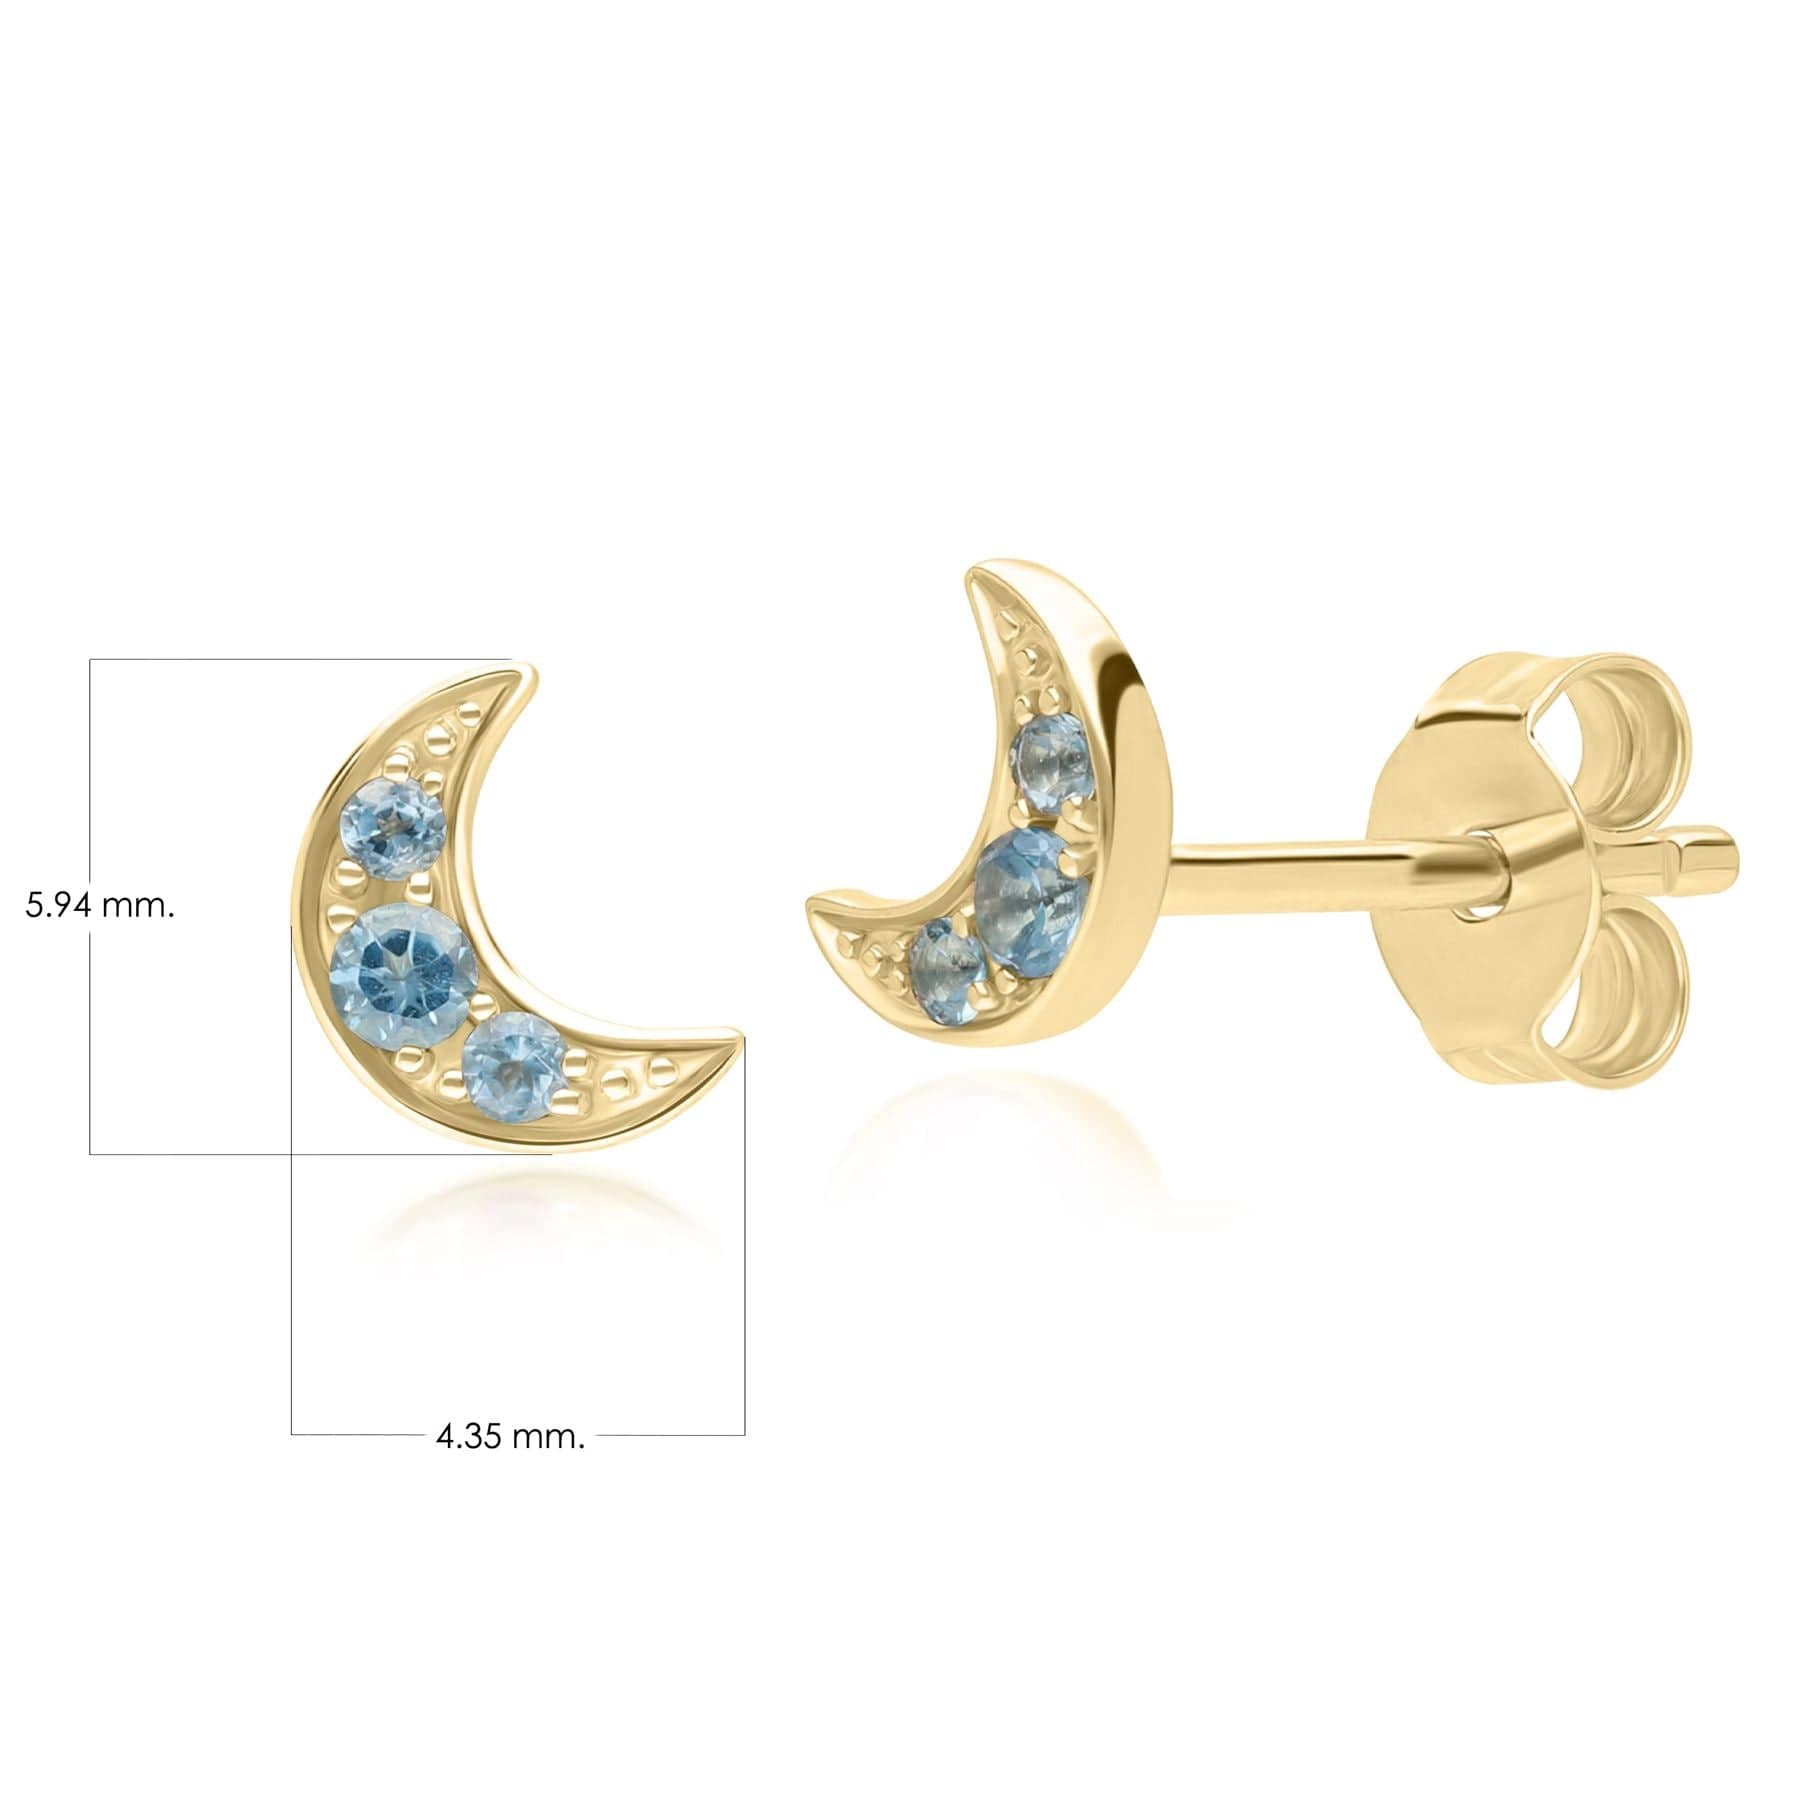 Night Sky London Blue Topaz Moon Stud Earrings in 9ct Yellow Gold - Gemondo